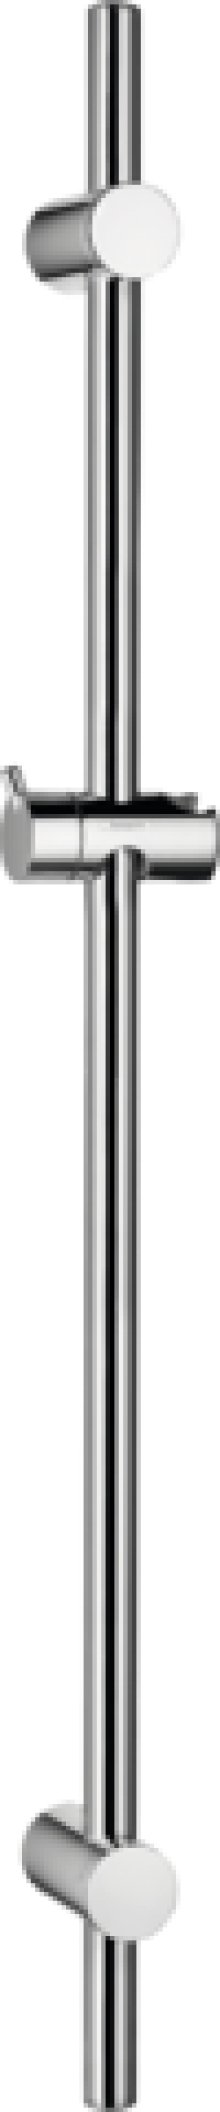 Unica sprchová tyč Reno 72 cm